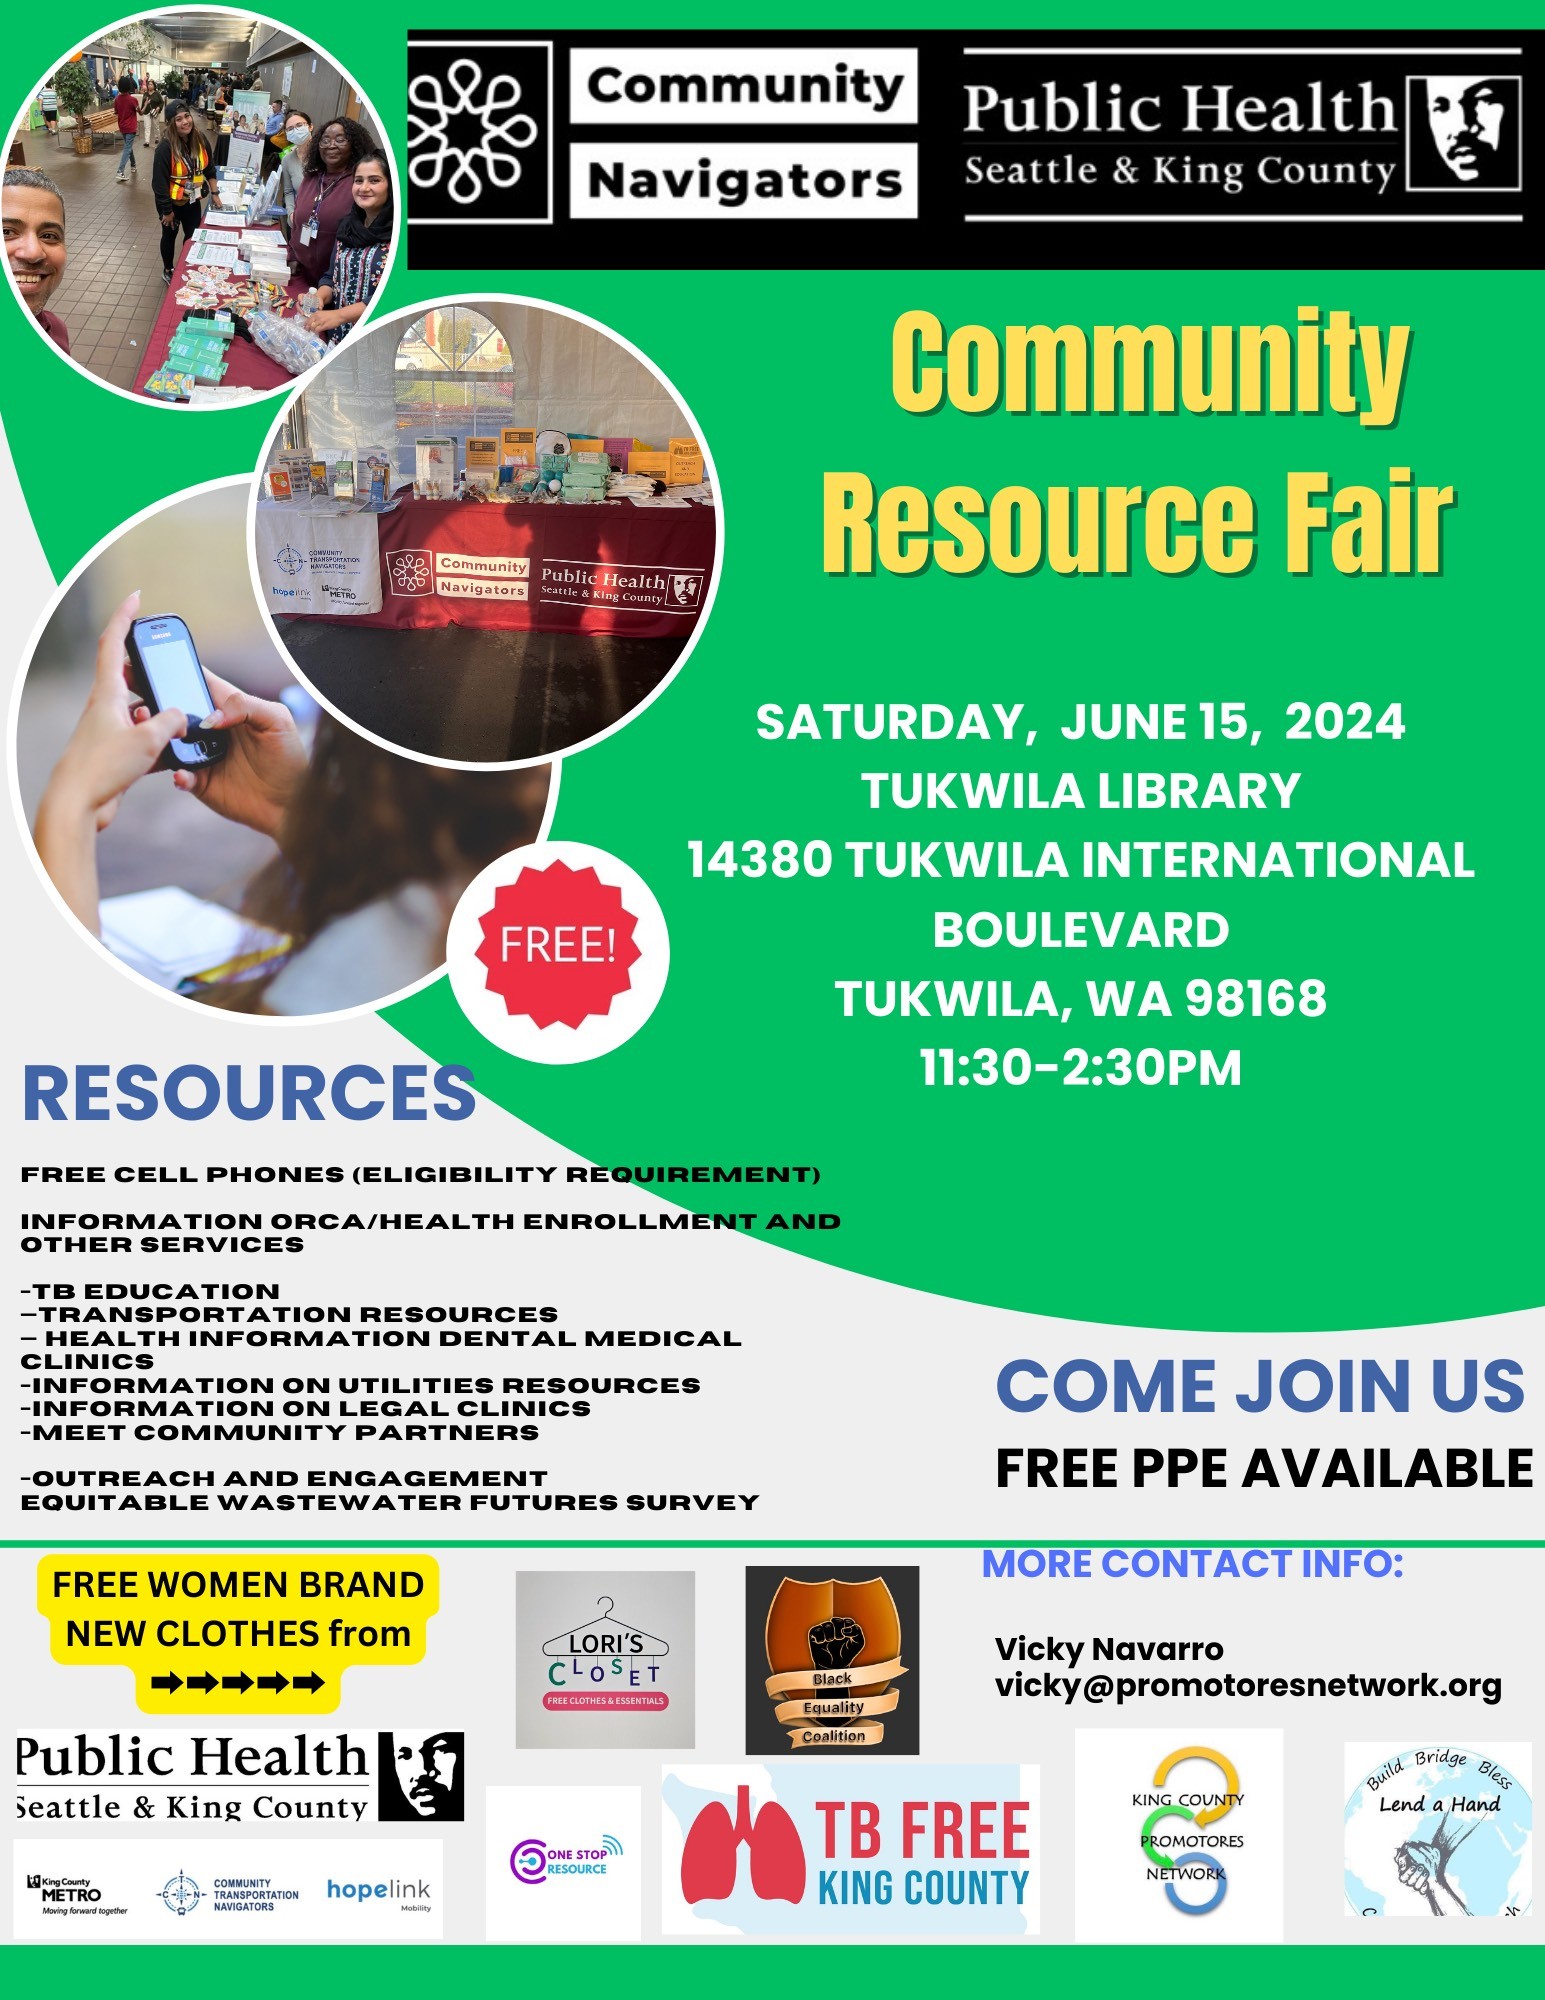 Community Resource Fair Tukwila Library June 15, 2024